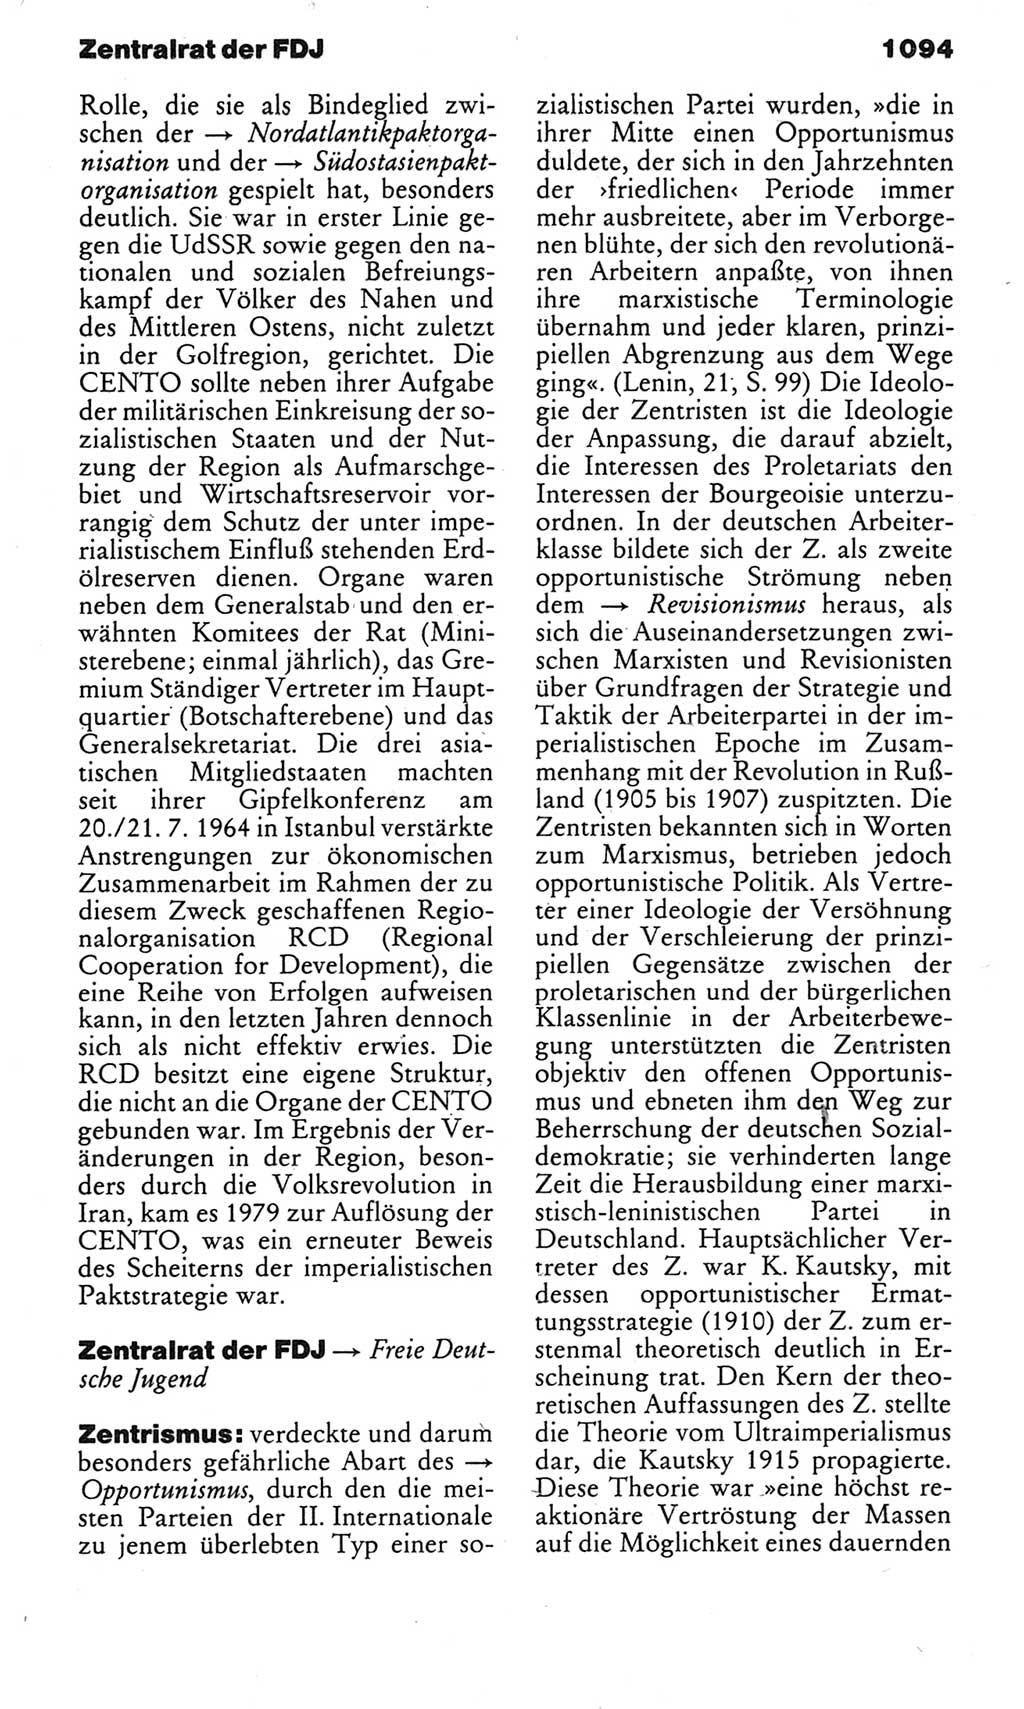 Kleines politisches Wörterbuch [Deutsche Demokratische Republik (DDR)] 1983, Seite 1094 (Kl. pol. Wb. DDR 1983, S. 1094)